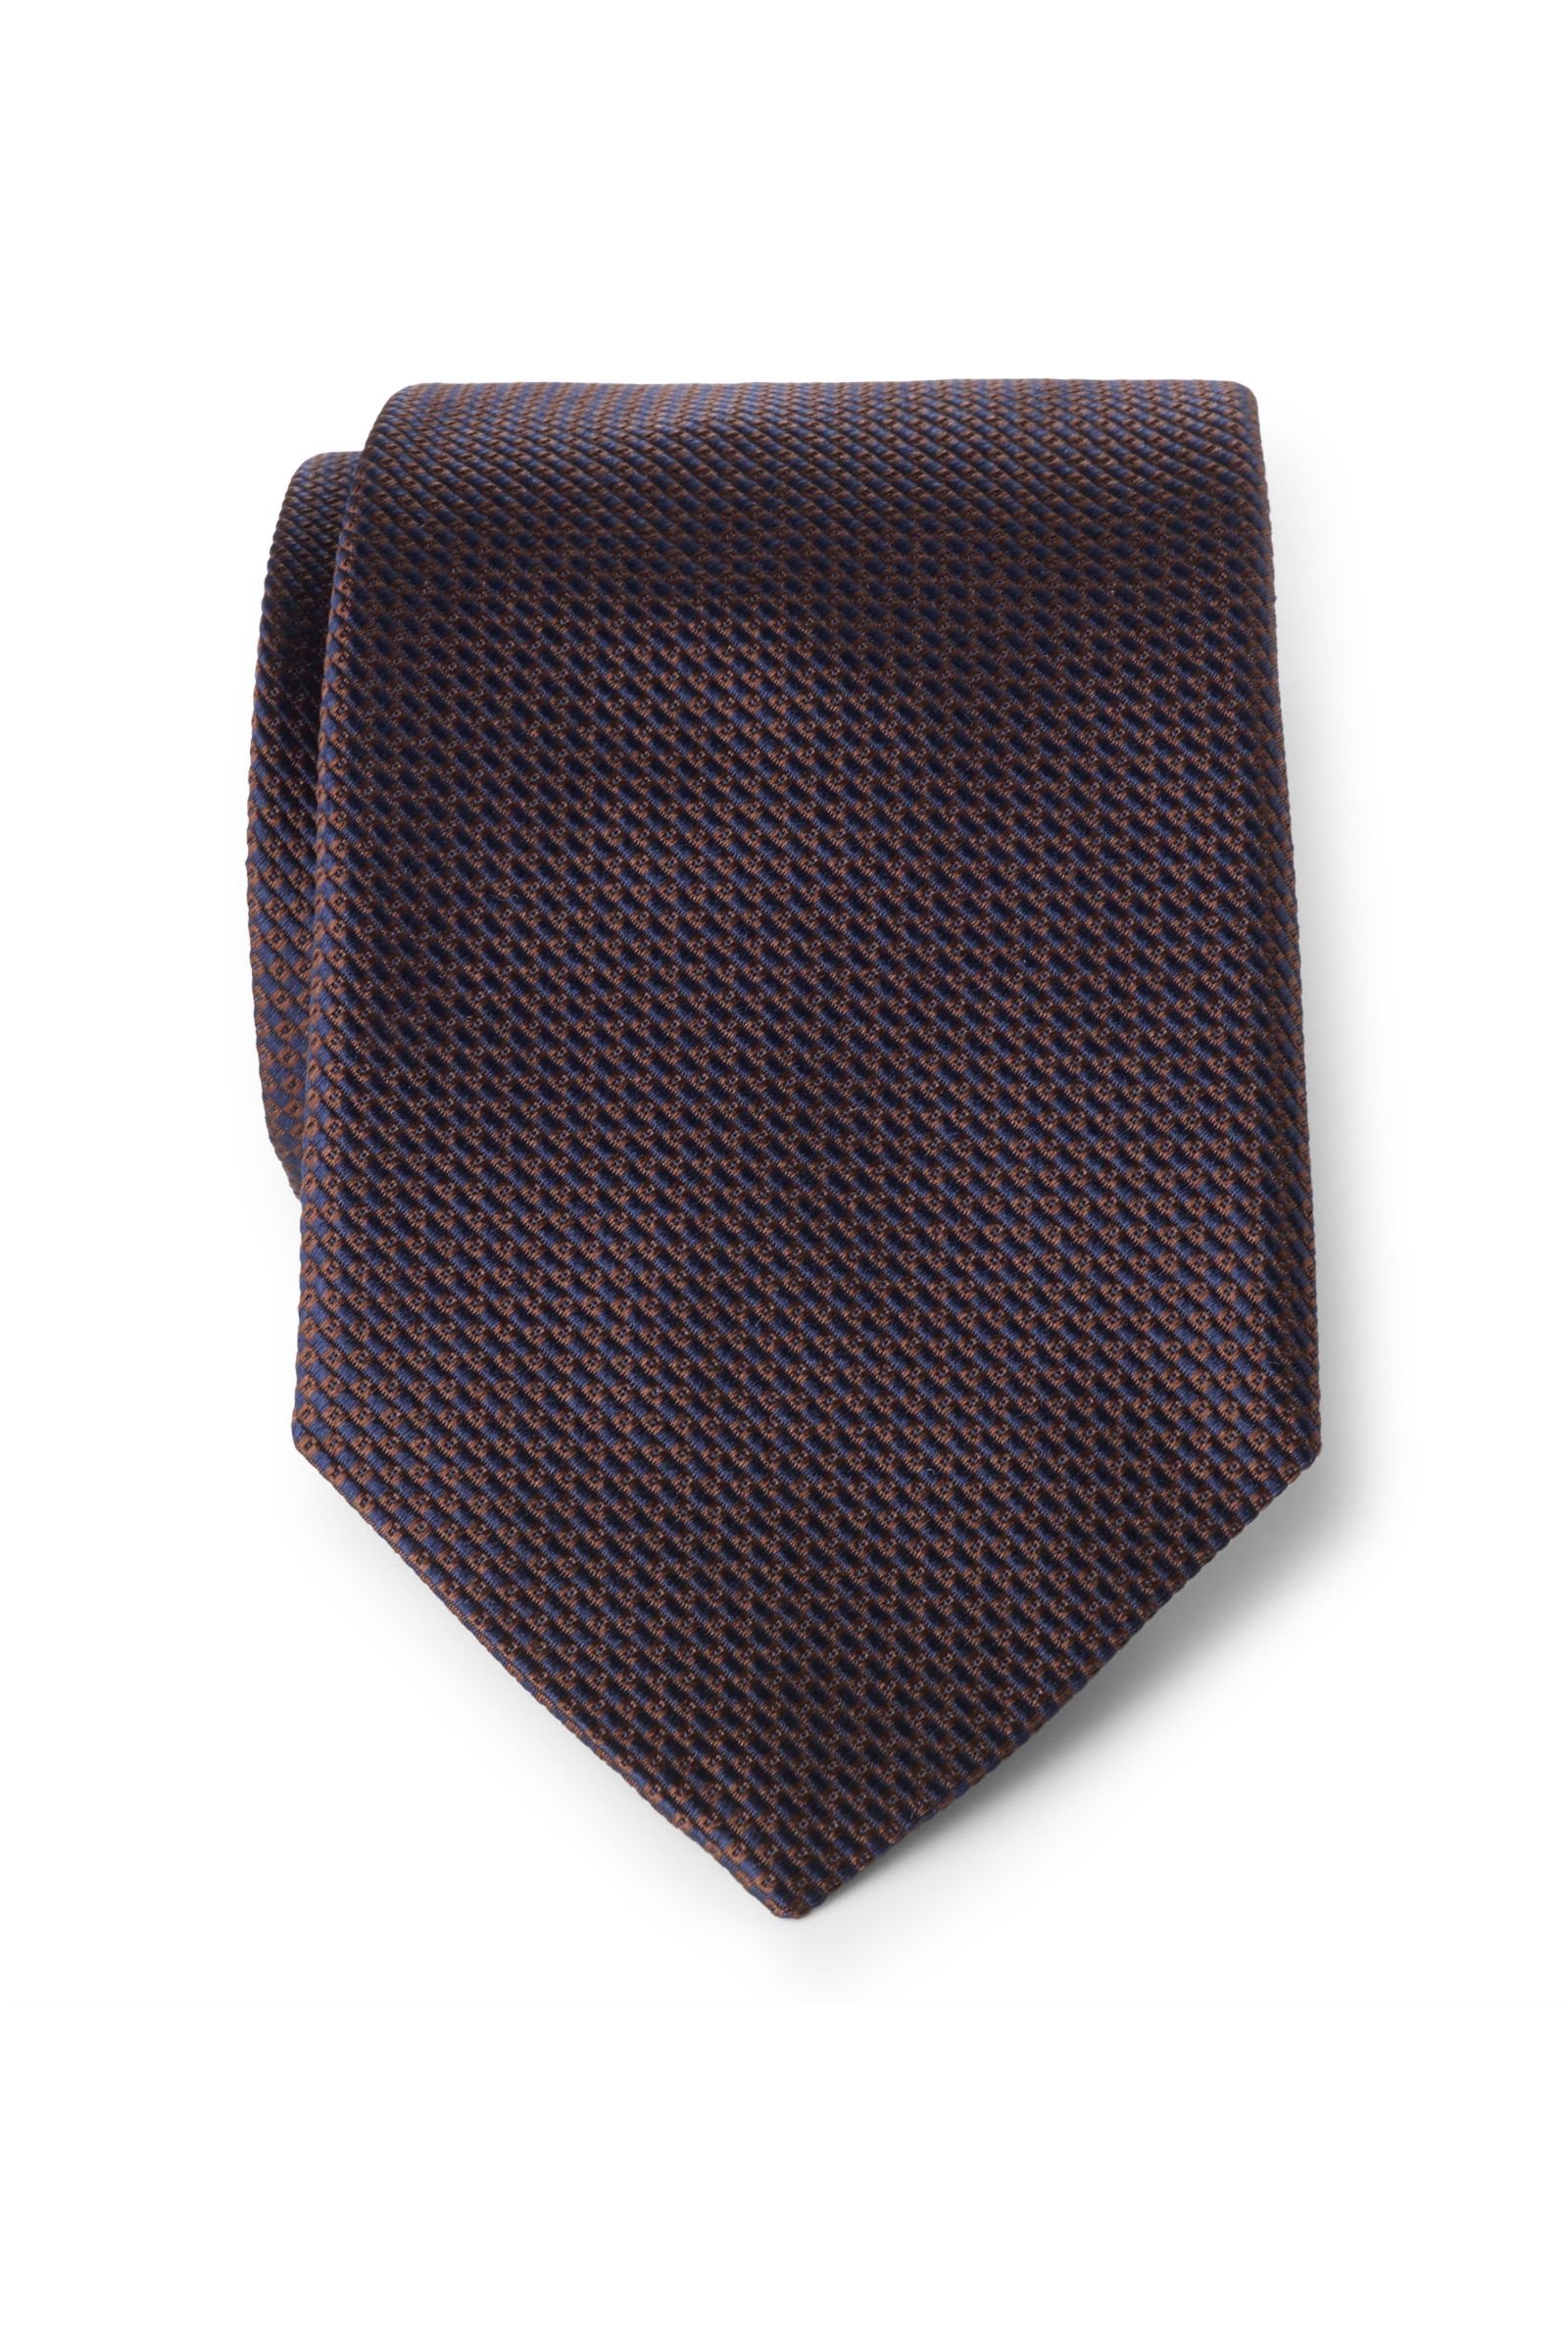 Silk tie dark brown patterned